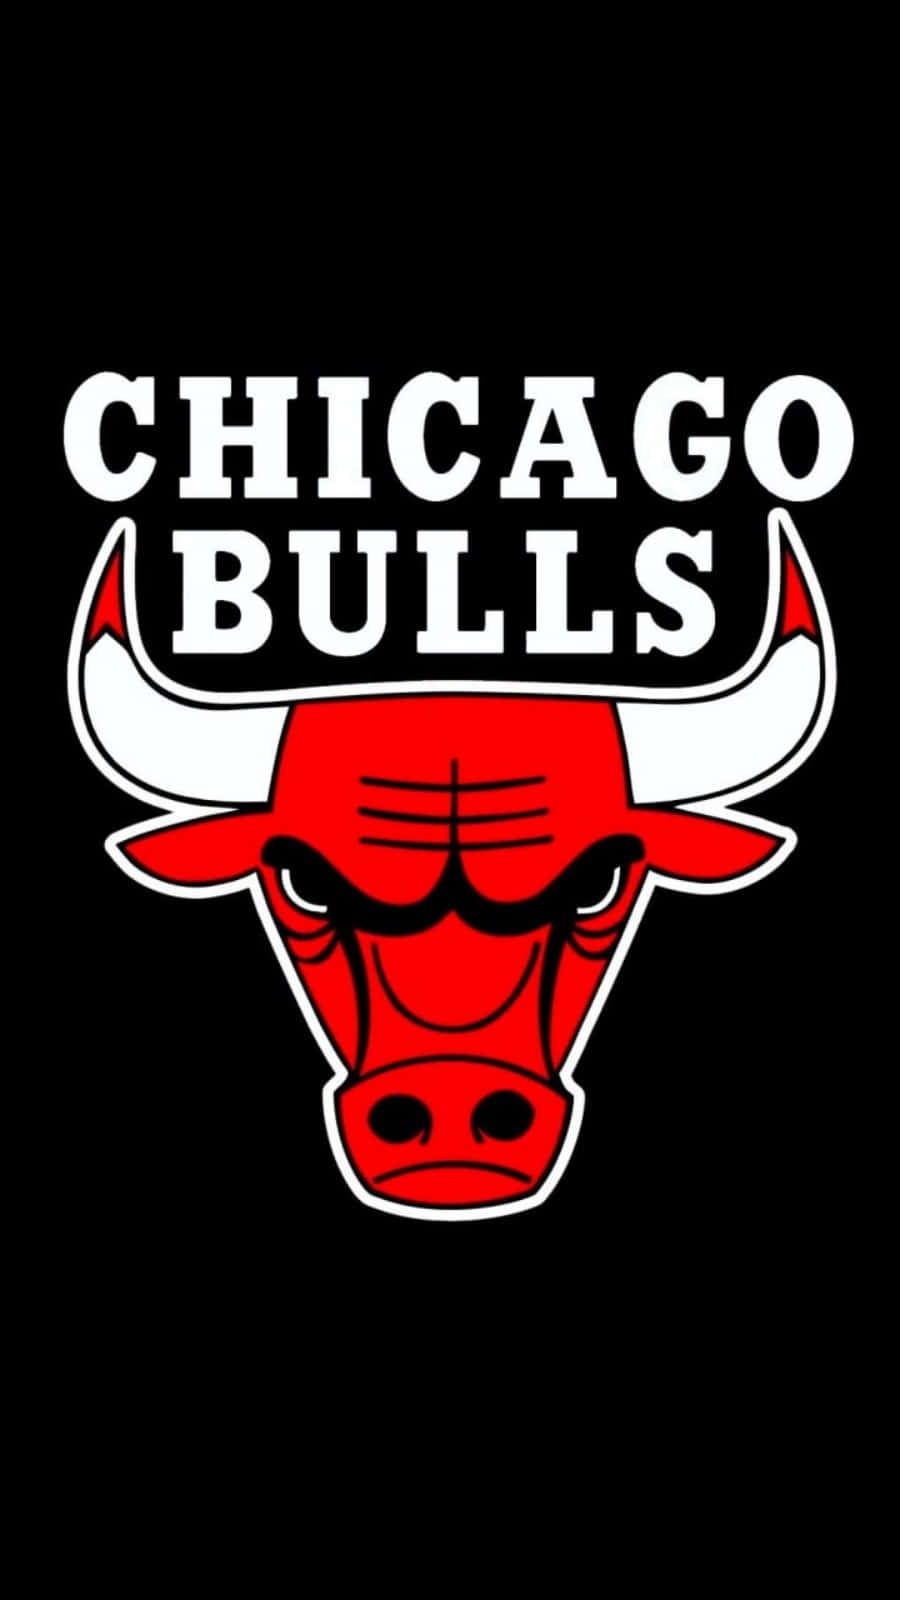 Zeigensie Ihren Stolz Für Die Chicago Bulls Auf Ihrem Handy! Wallpaper